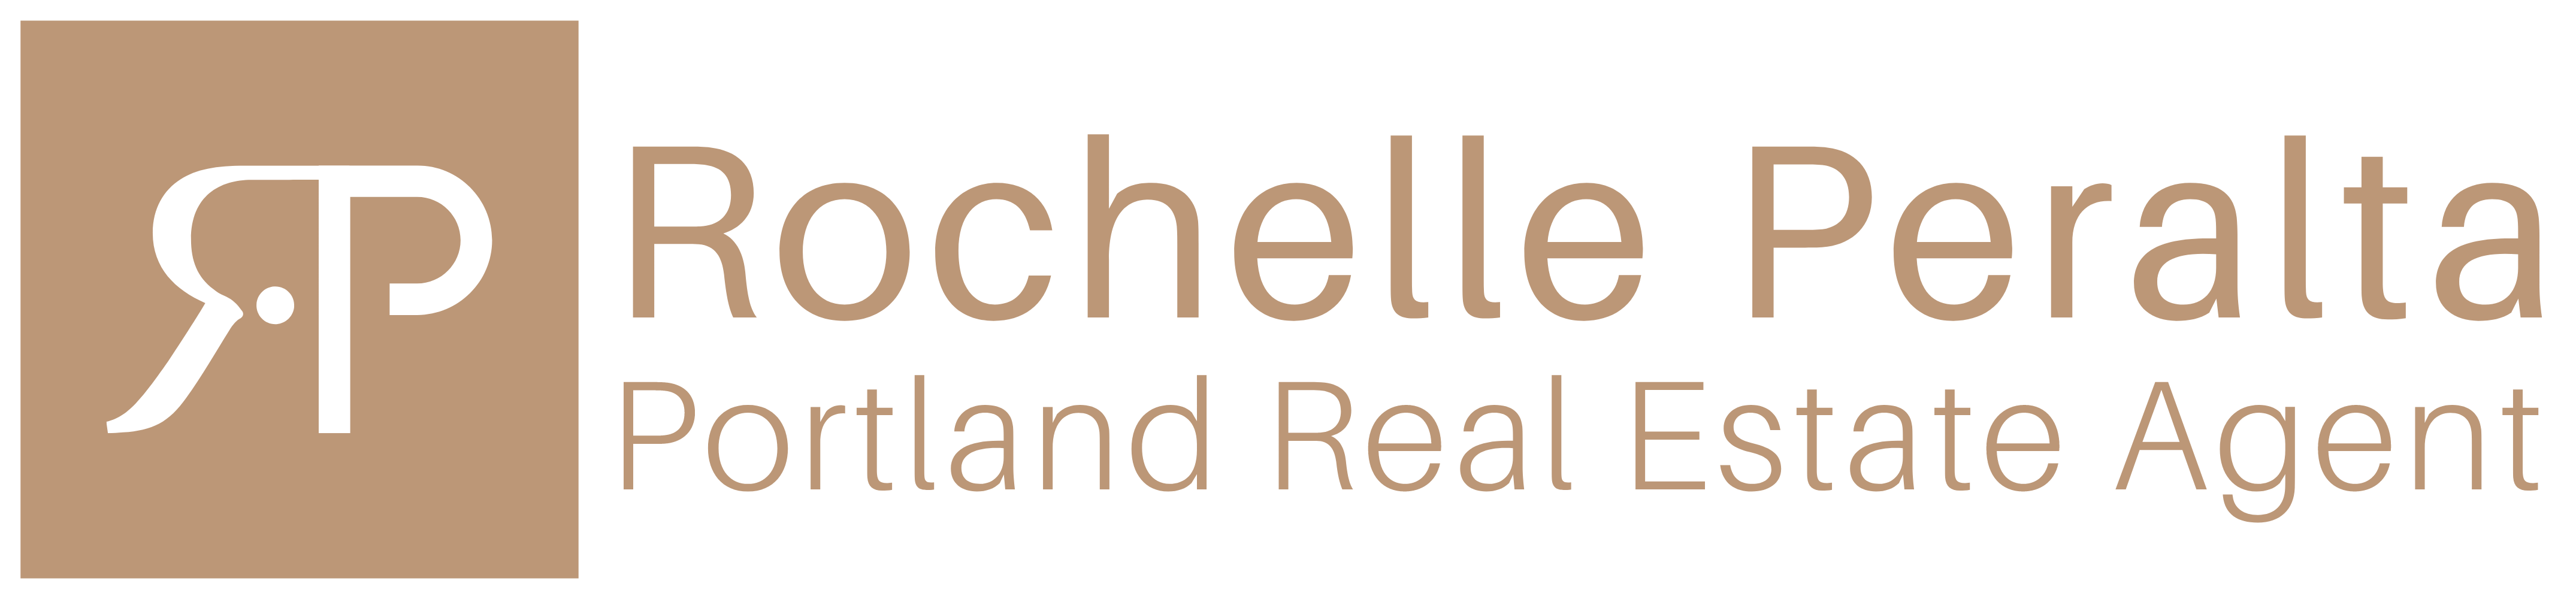 Portland-Real-Estate-Agent-Rochelle-Peralta-logo